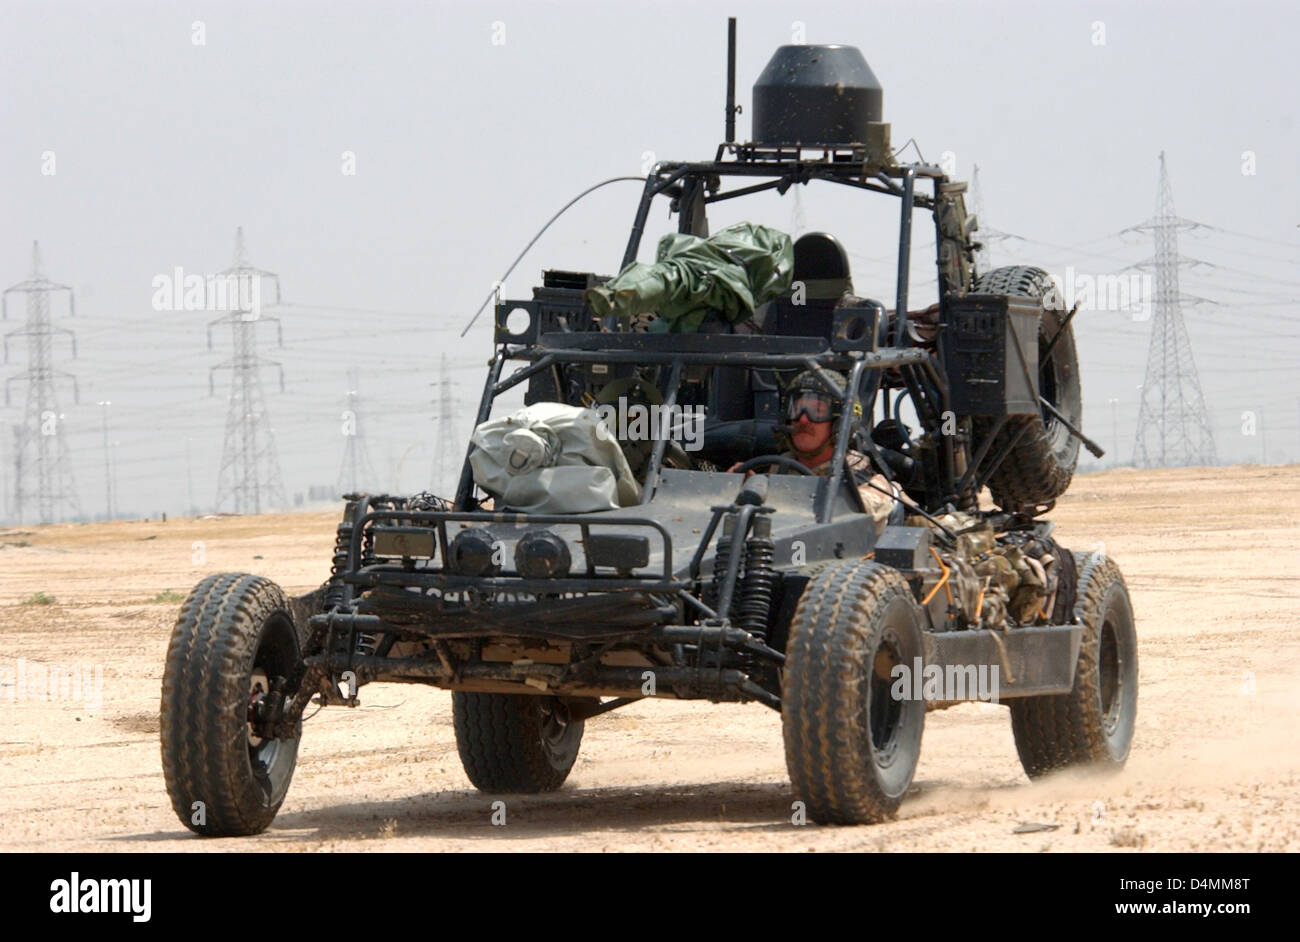 U.S. Navy SEALs betreiben ein Desert Patrouillenfahrzeug während der Vorbereitung auf eine bevorstehende Mission 13. Februar 2002 in Camp Doha, Kuwait. Jede Dune Buggy ist mit komplexen Kommunikations- und Waffensysteme, konzipiert für den harten Wüstengebiet ausgestattet. Stockfoto